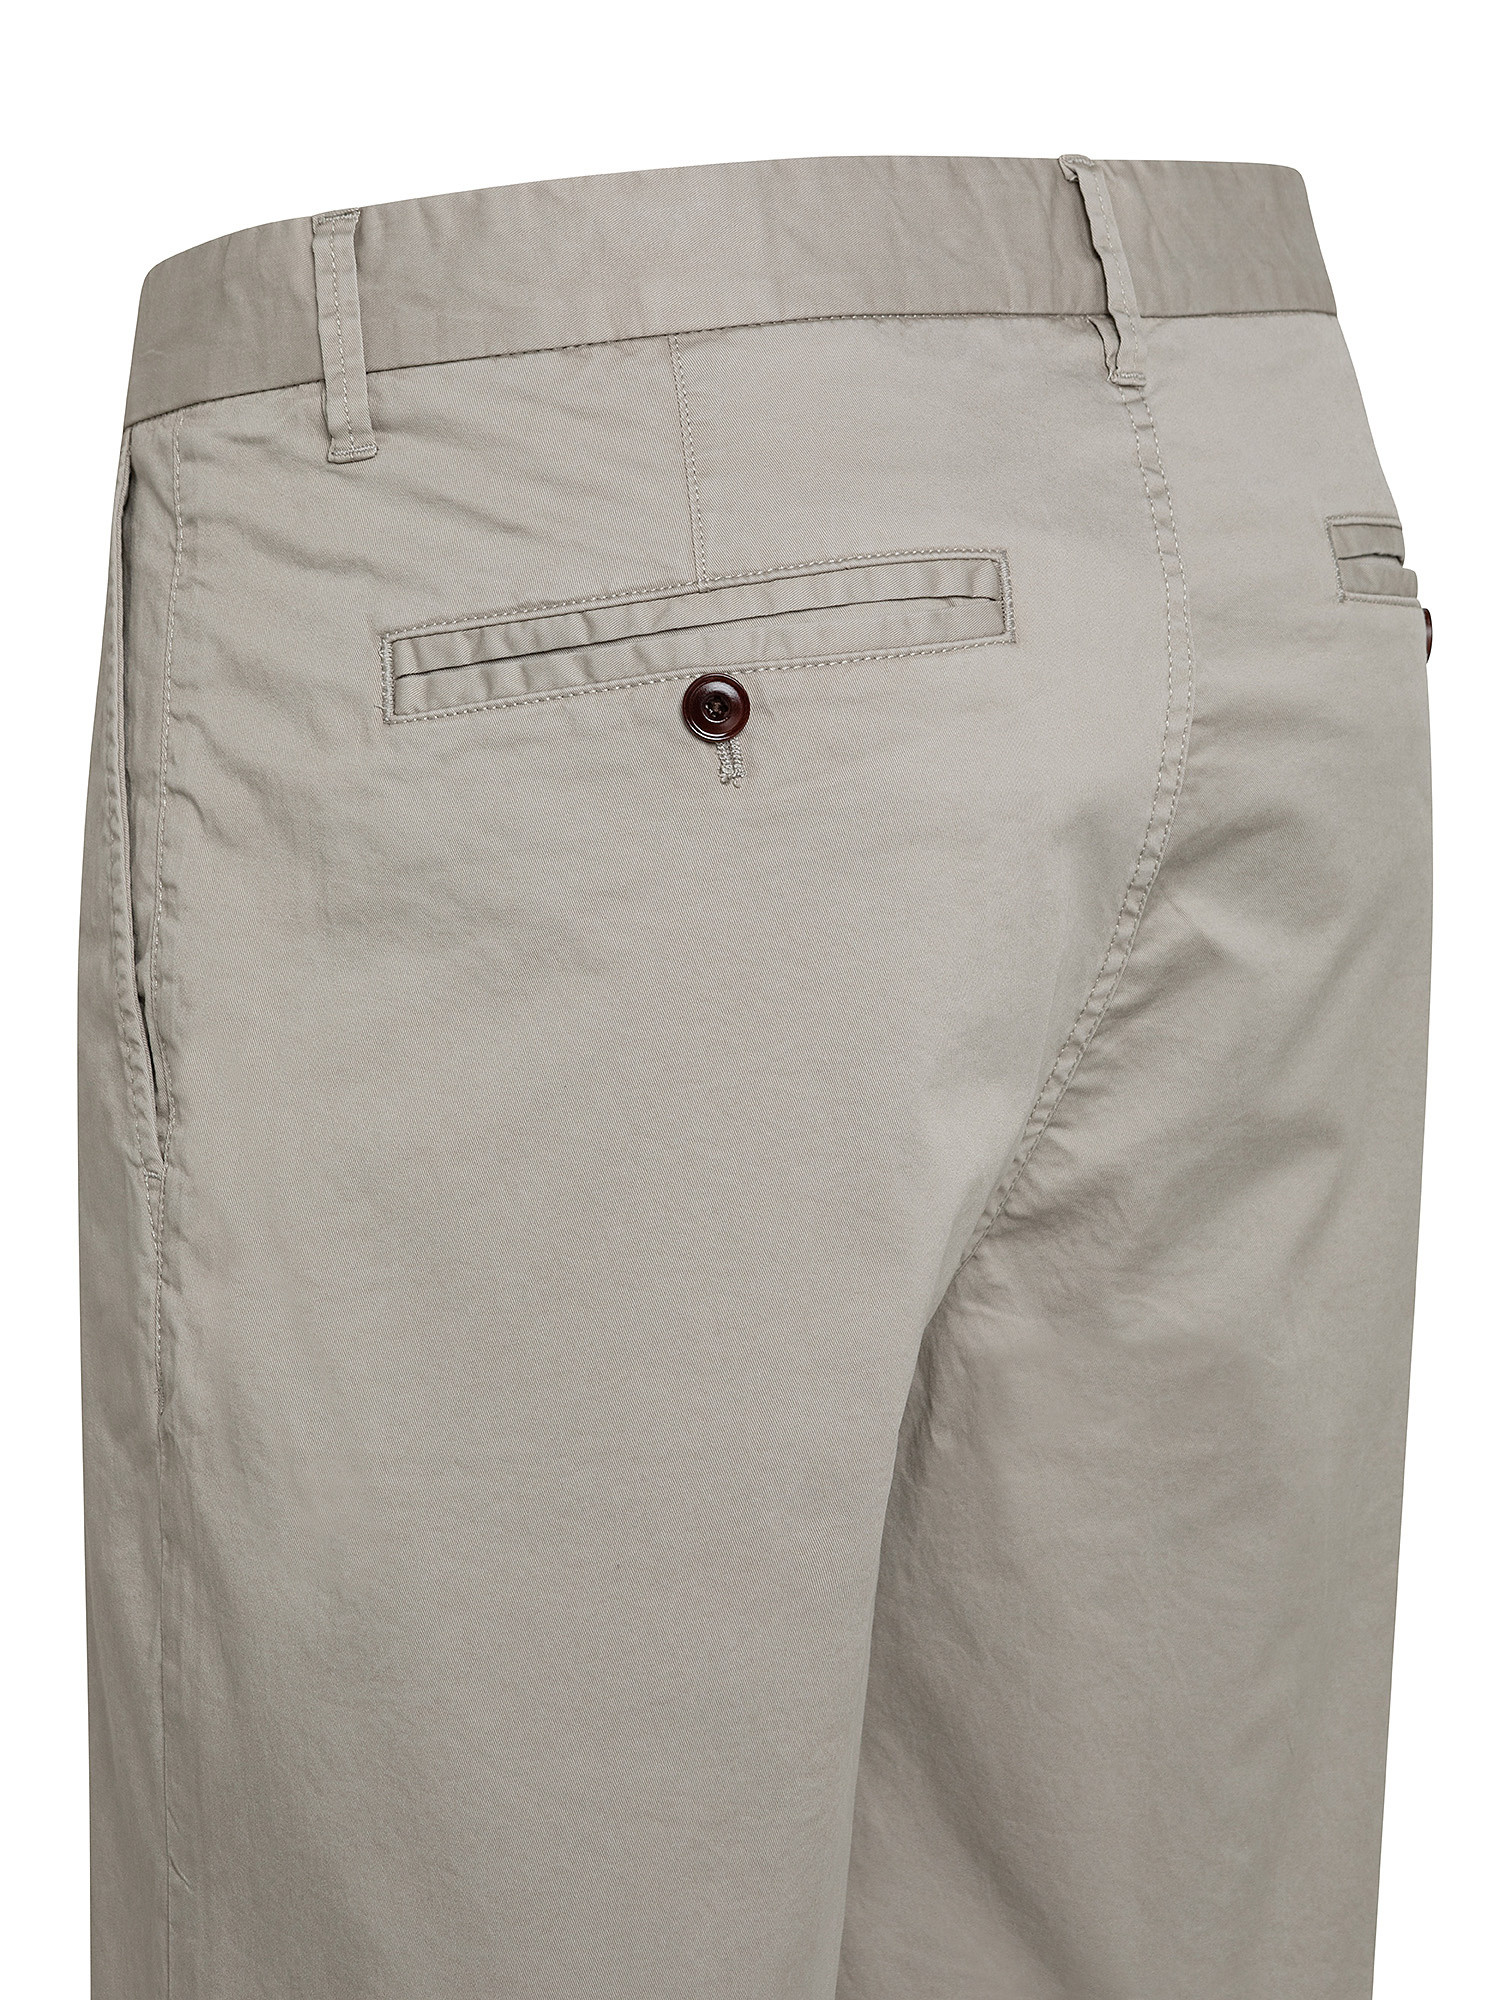 Chino shorts, Light Grey, large image number 2